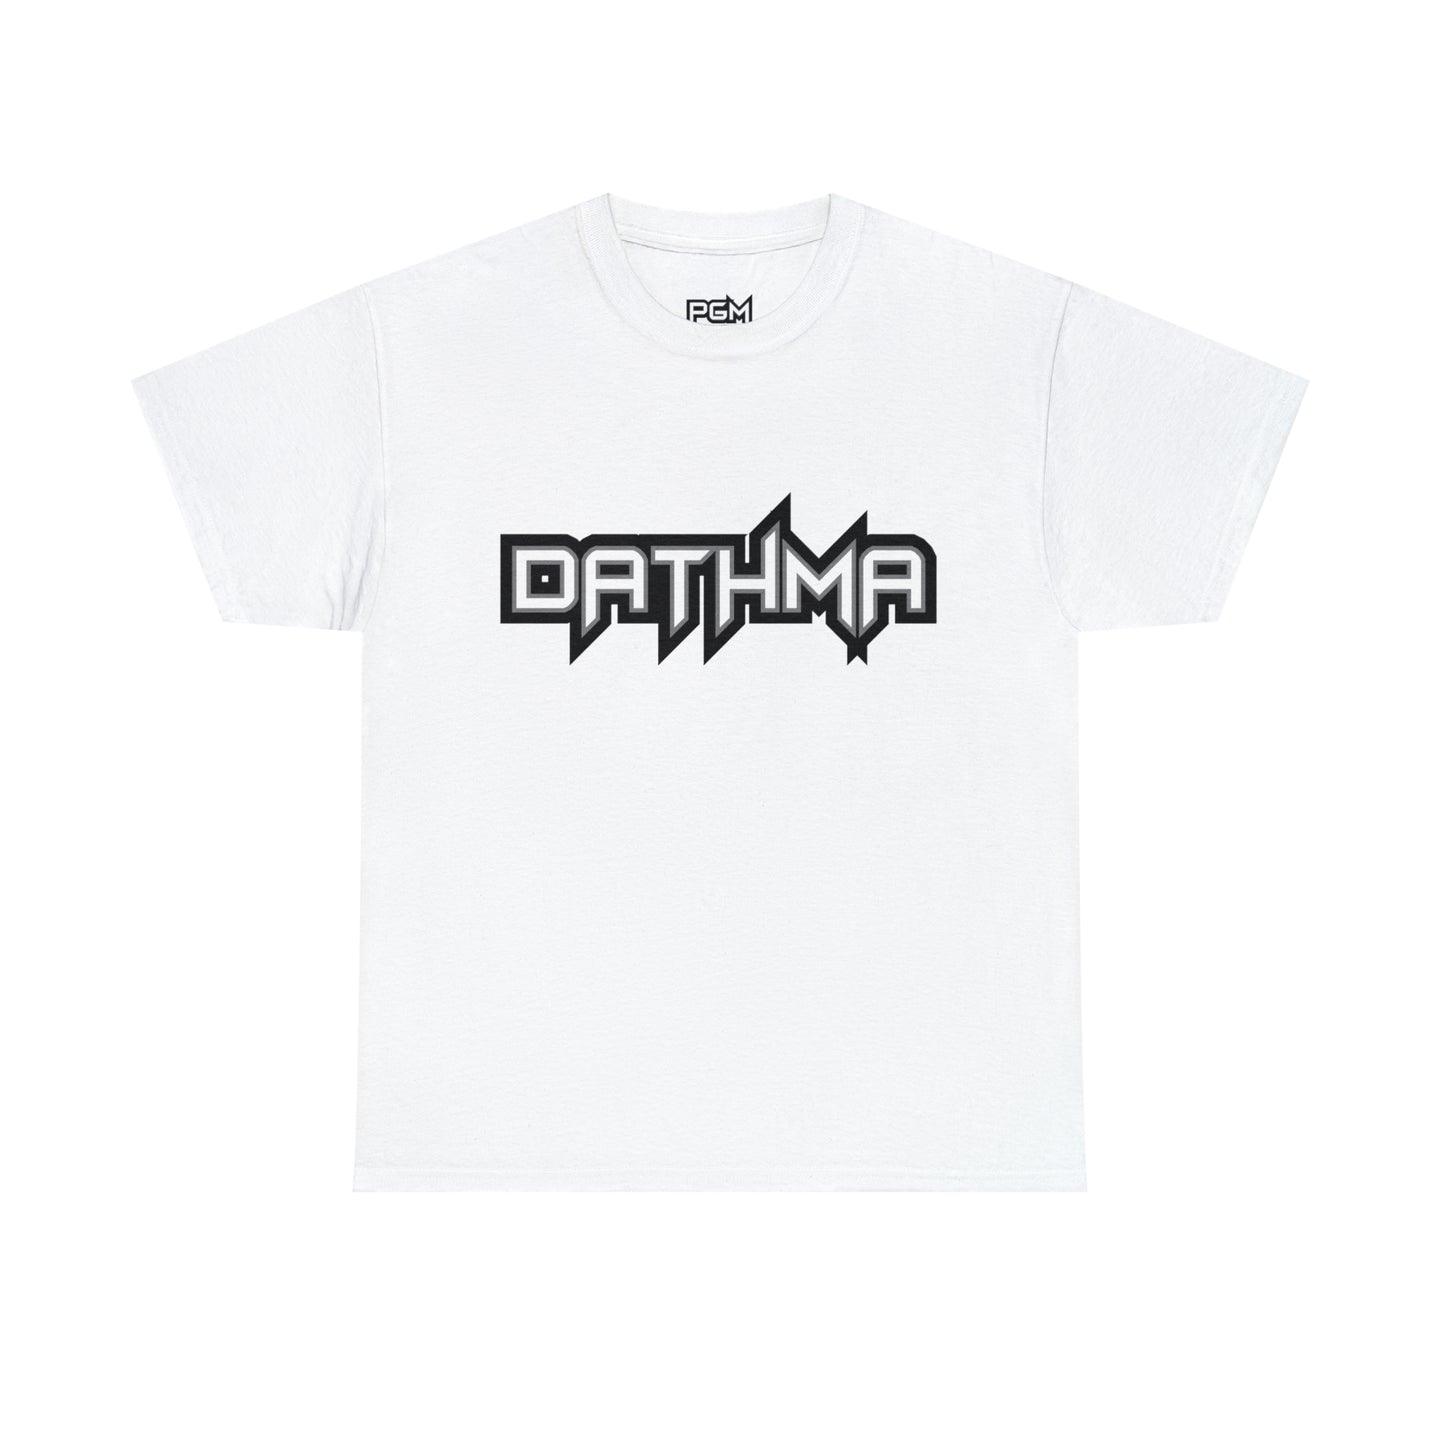 Dathma Men's Heavyweight Cotton Short Sleeve Crew Neck T-Shirt